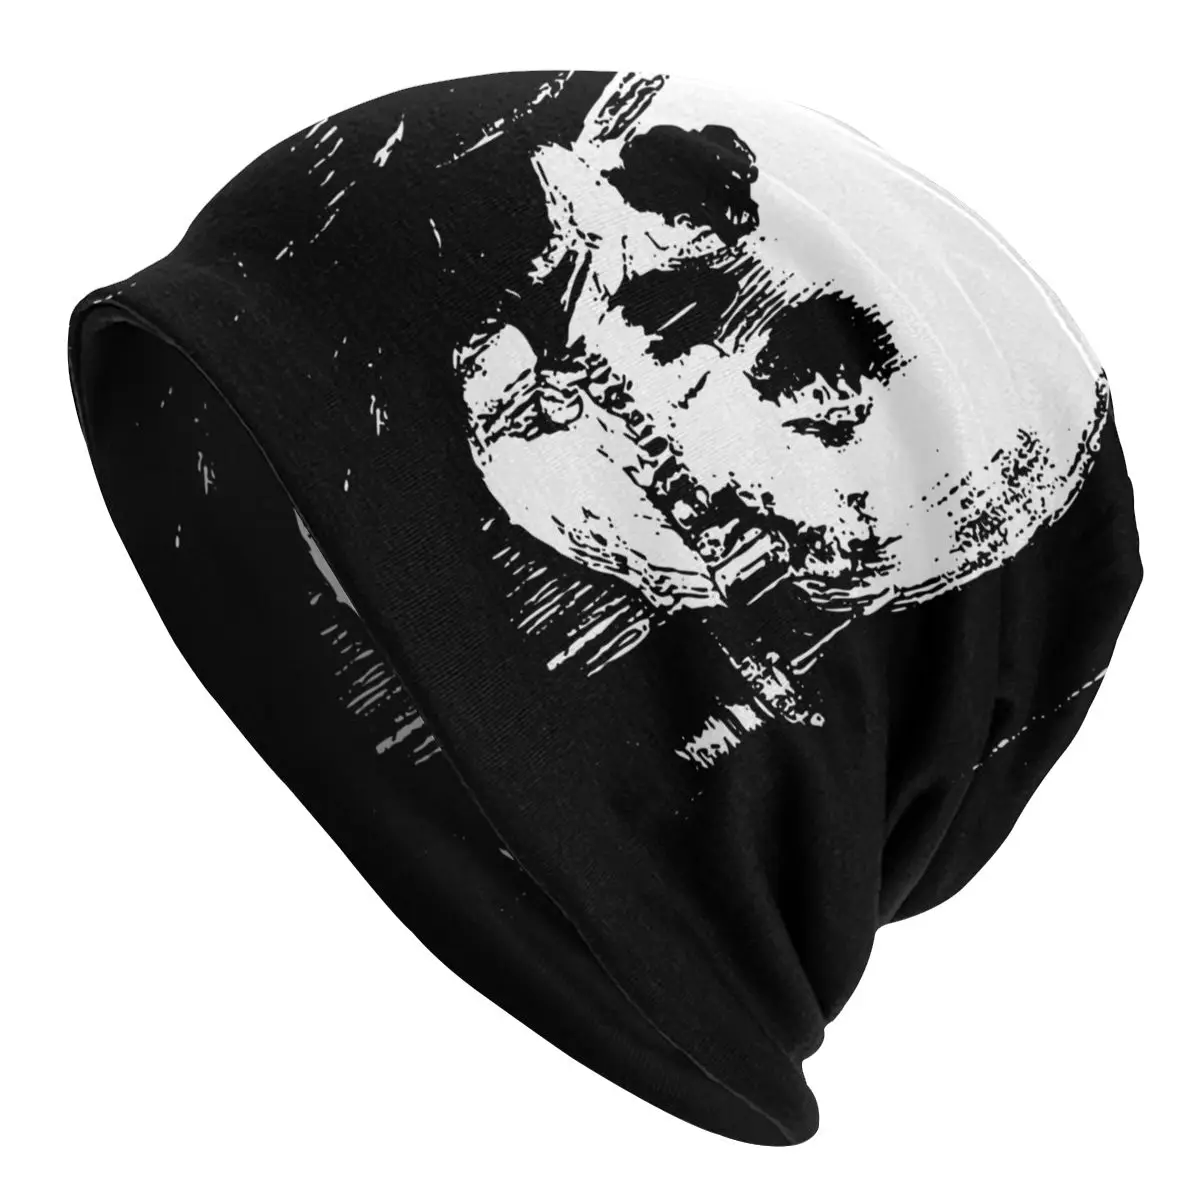 

Skull Reflection In Mirror Zipped Caps Skullies Beanies Hats Unisex Men Women's Female Winter Warm Dual-use Bonnet Knit Hat